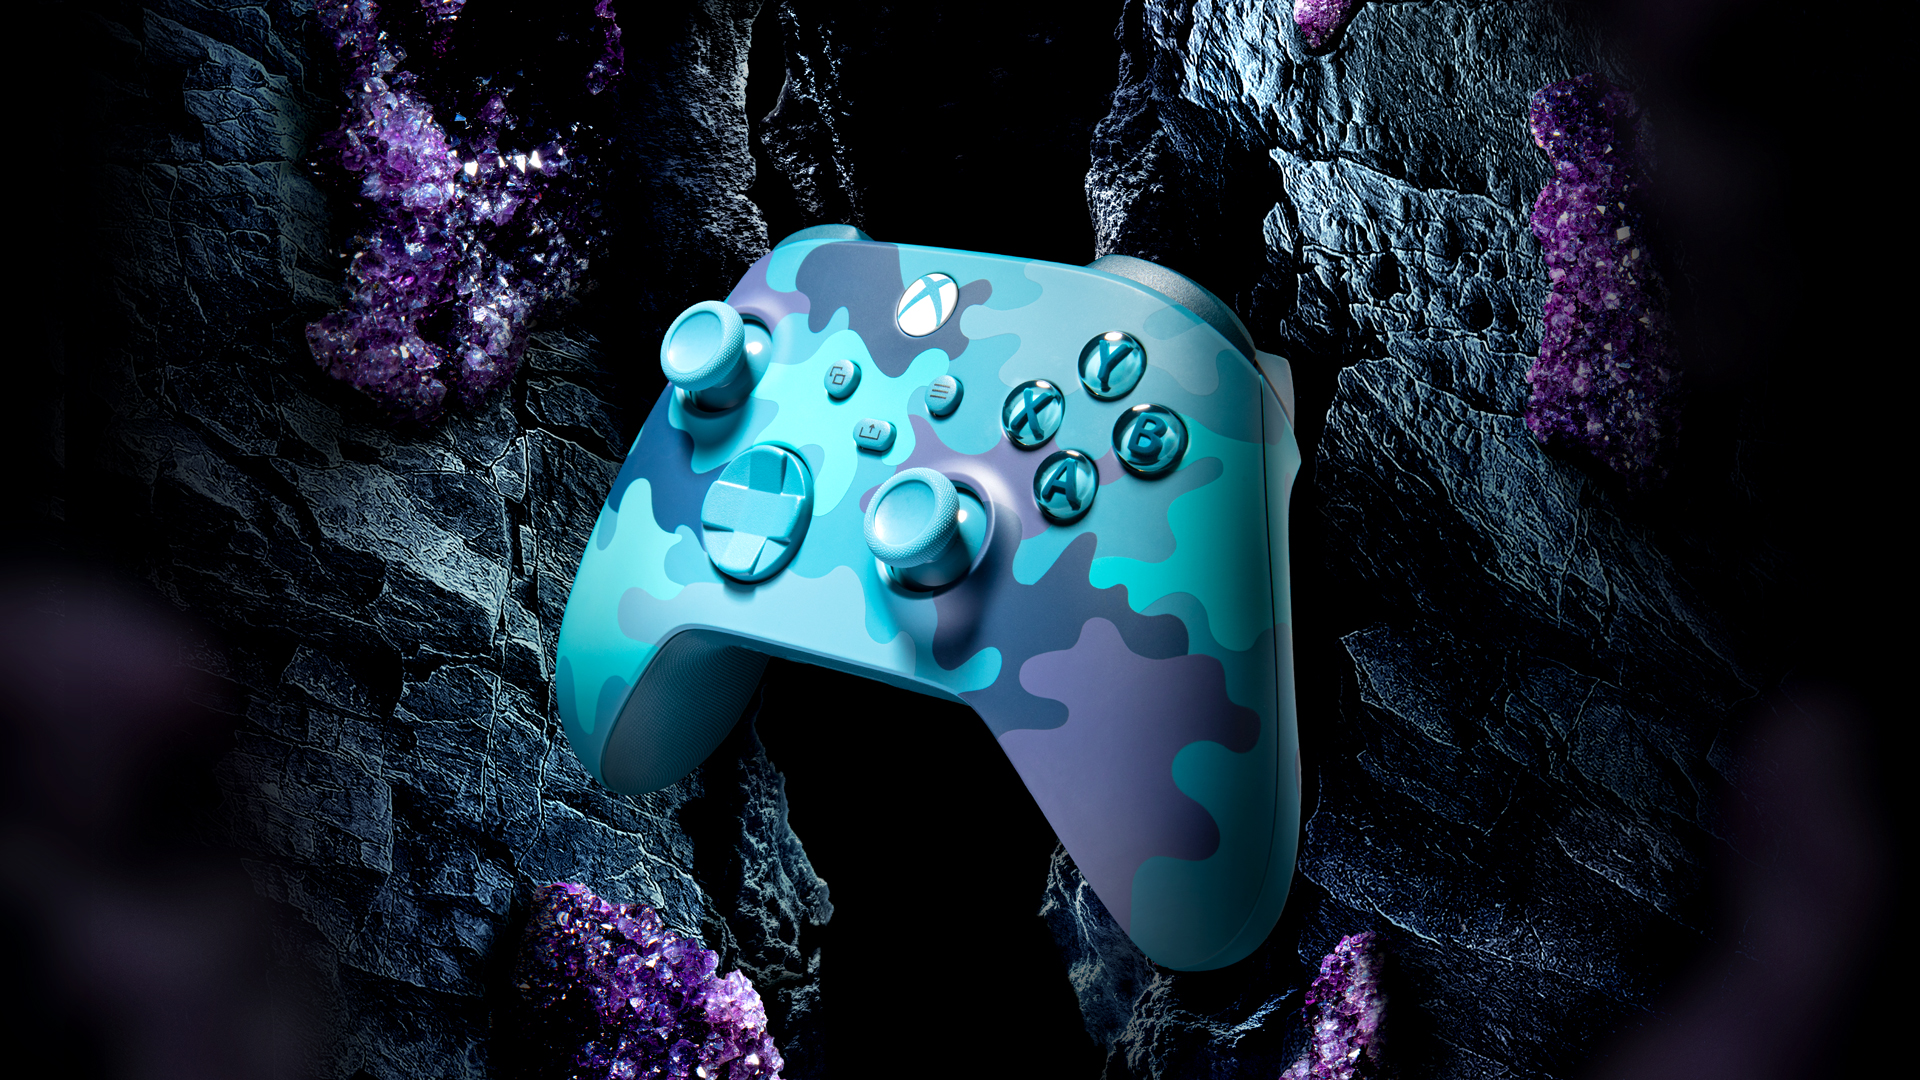 Prémiový ovládač Microsoft Xbox Wireless Controller 4 Mineral Camo sa po designovej stránke inšpiruje charakteristickou farebnosťou minerálov - prím tu hrajú tmavo modré, tyrkysové, zelené aj fialové farebné odtiene.